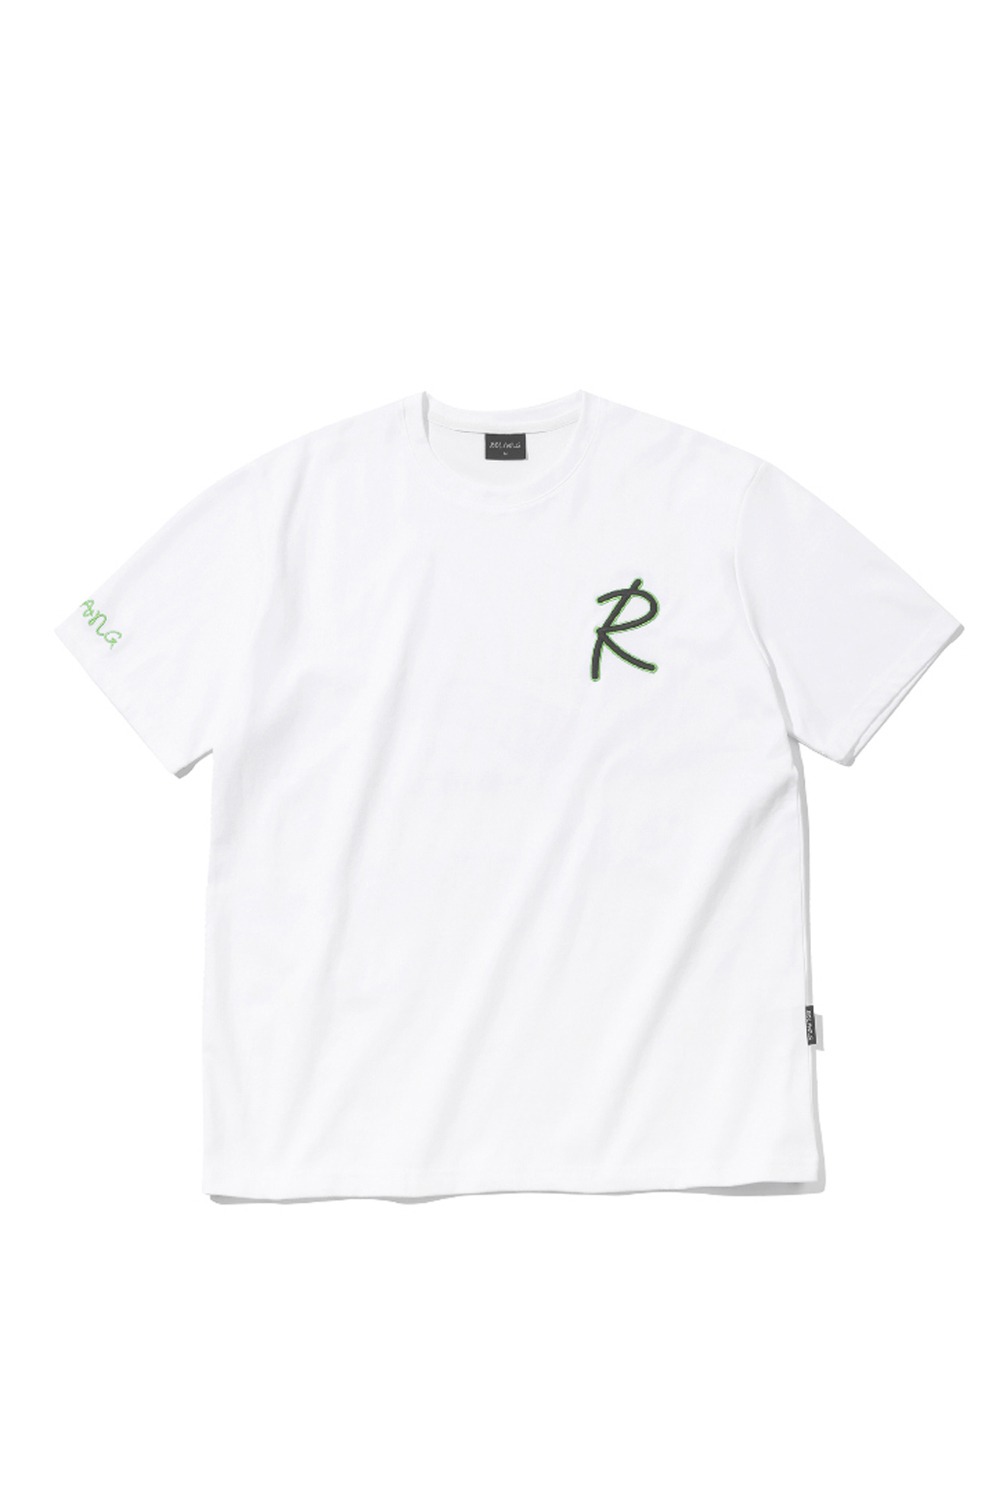 [WOMEN] 로랑 에센셜 R 티셔츠 (그린) - 리치즈 RICHEZ